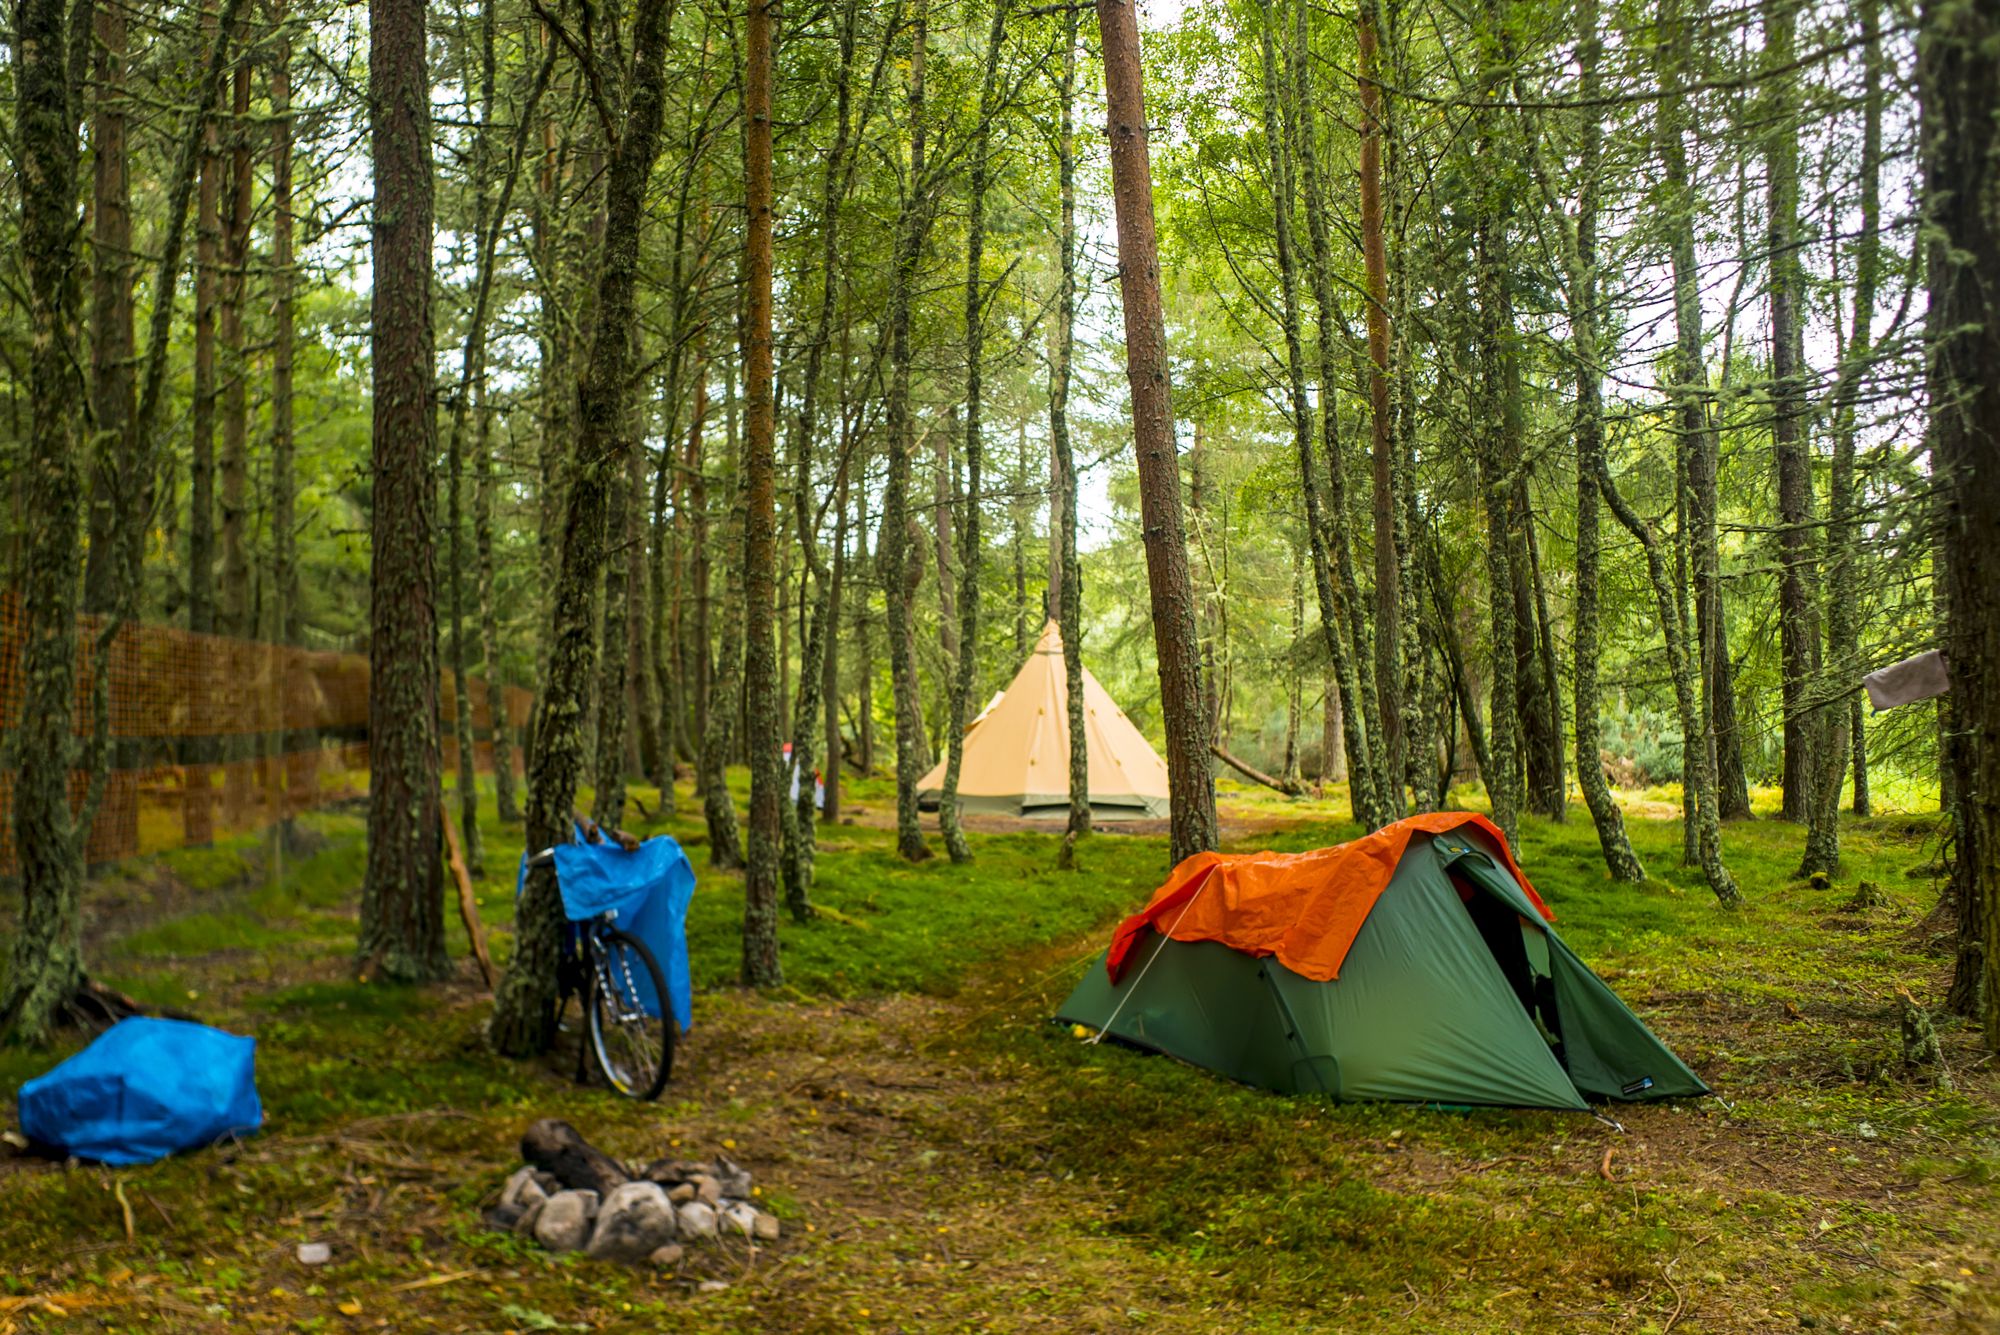 Campsites in Highlands – I Love This Campsite